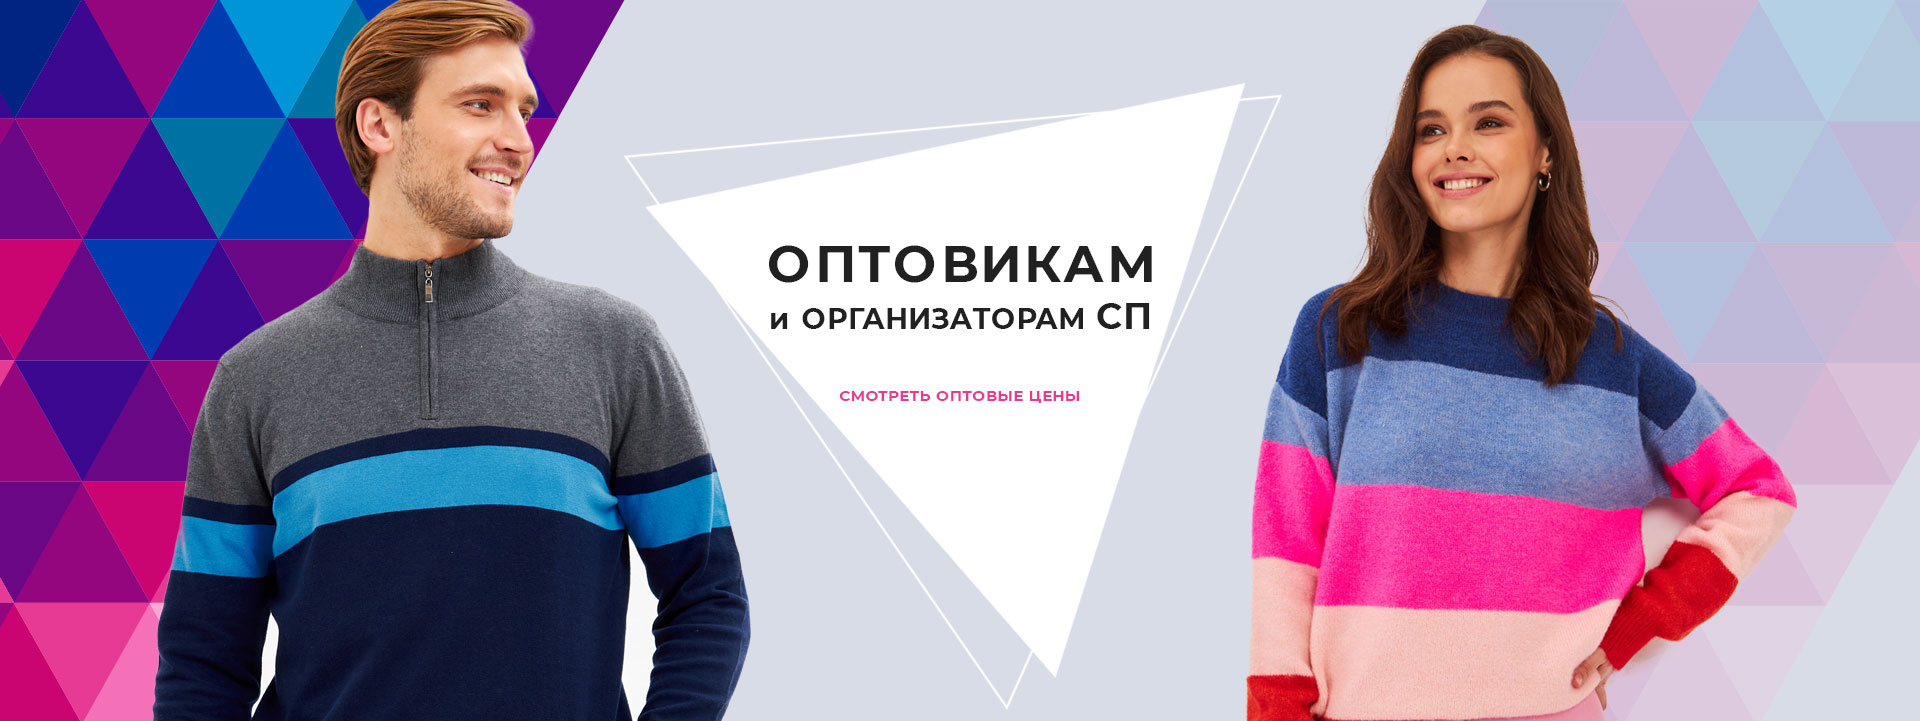 Оптовикам и организаторам совместных закупок. Одежда оптом от производителя в Москве. Интернет-магазин мужской и женской одежды АЗБУКАМОДА.